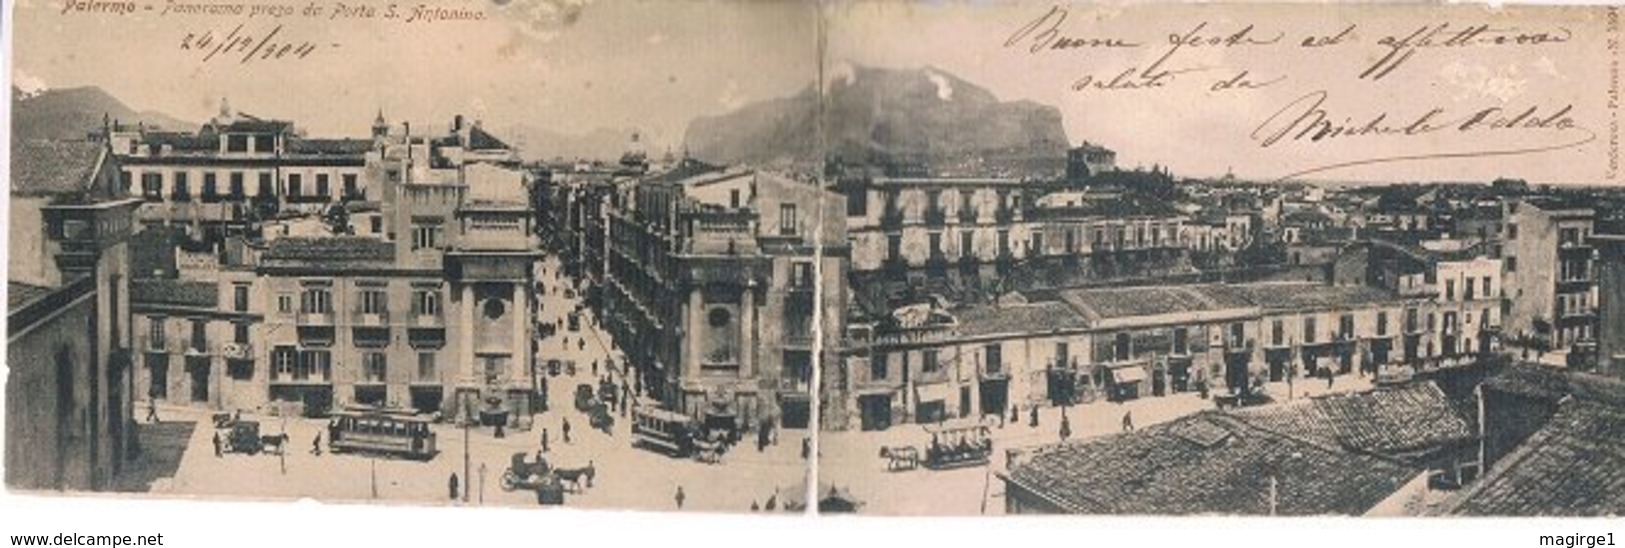 B3400 - Palermo, Panorama Da Porta S. Antonino,rovinata In Due Riparata Con Carta Giapponese, Viaggiata 1911. - Palermo